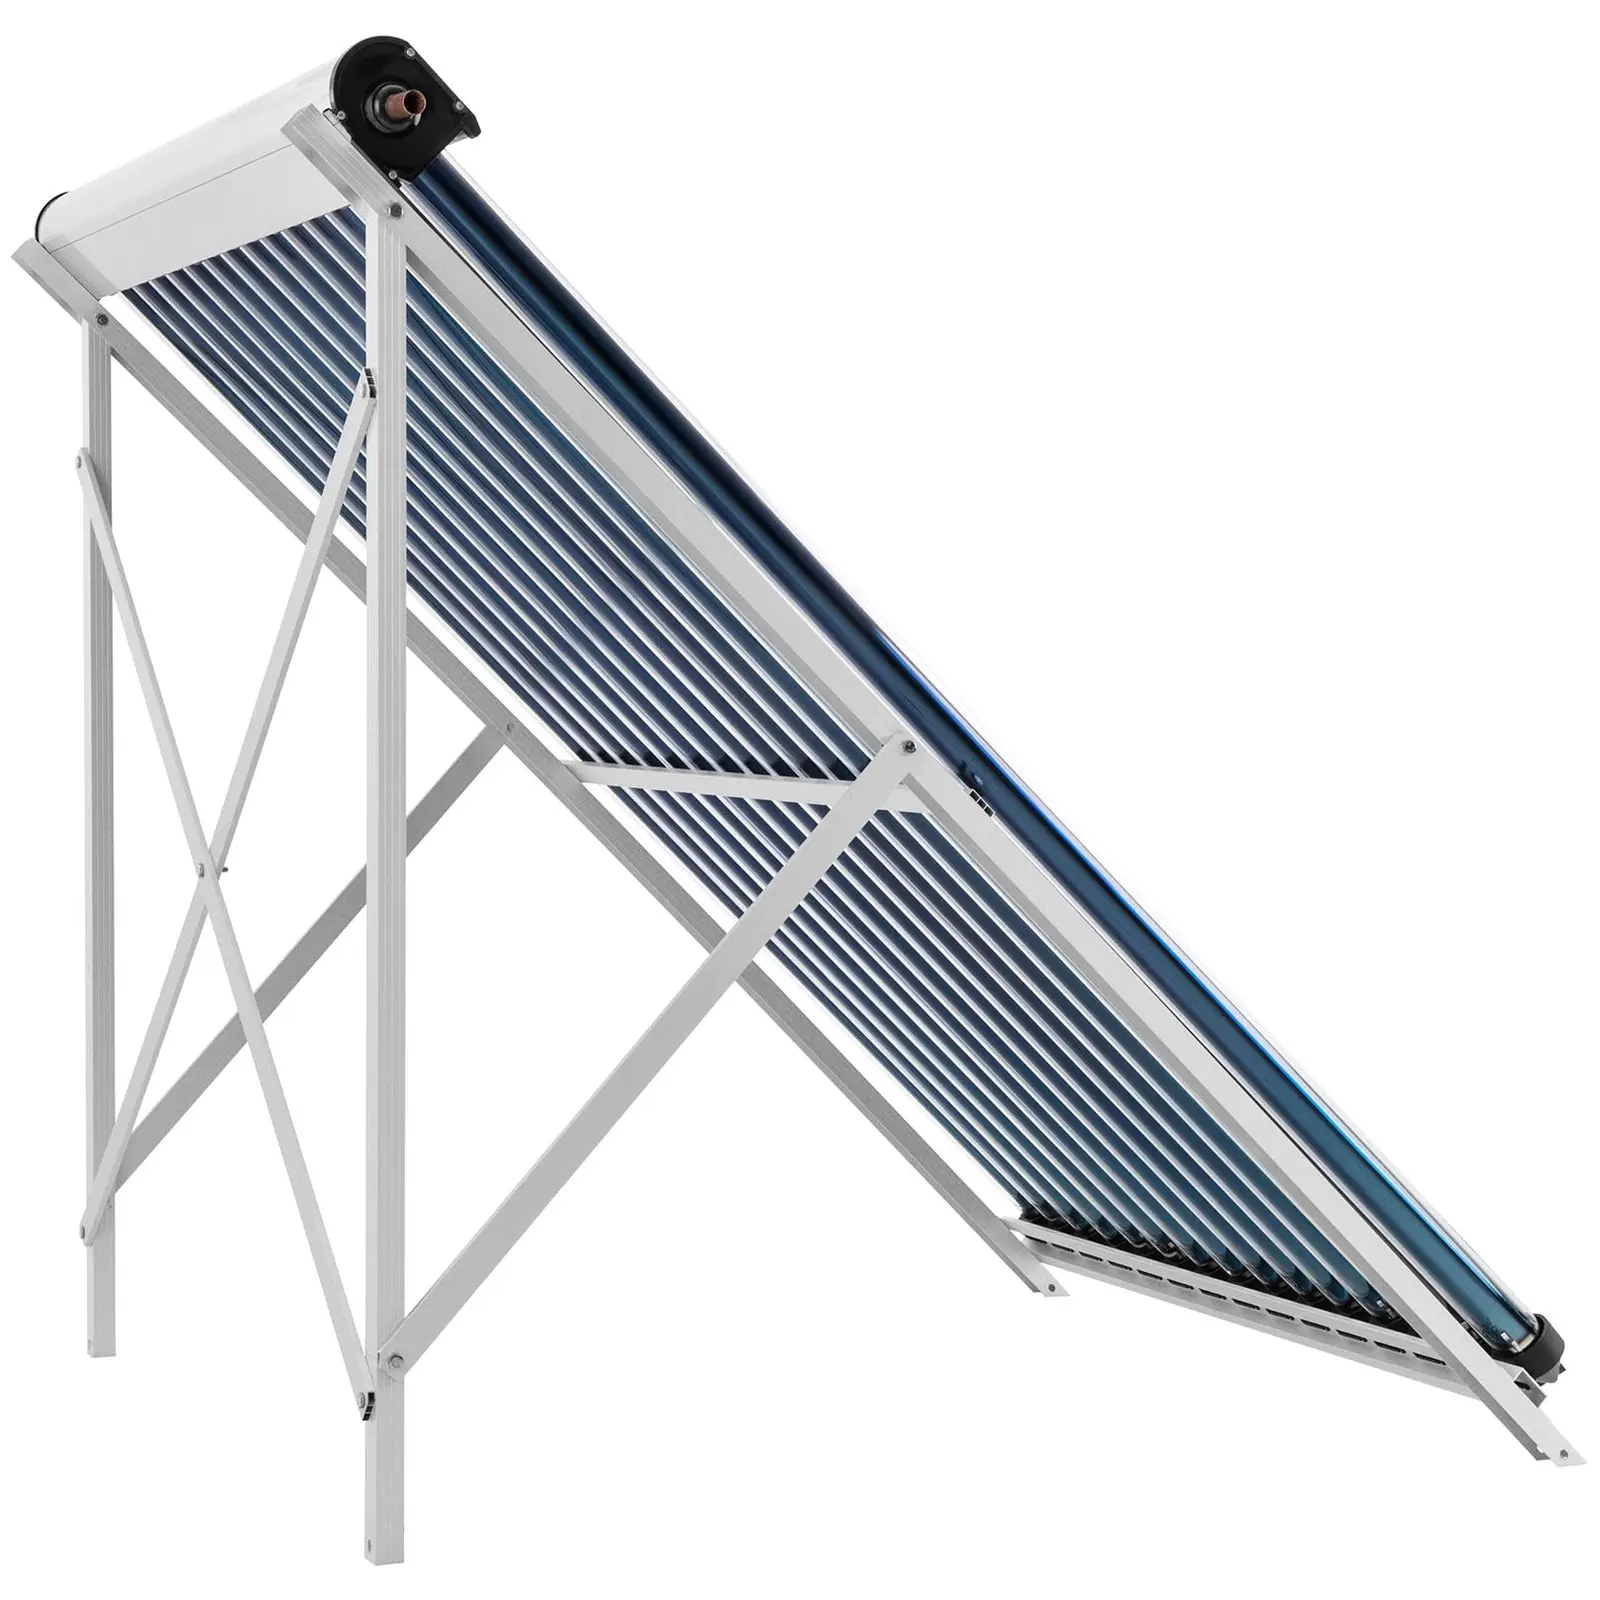 Rúrkový kolektor - solárna tepelná energia - 15 trubíc - 150 l - 1.2 m² - -45 – 90 °C